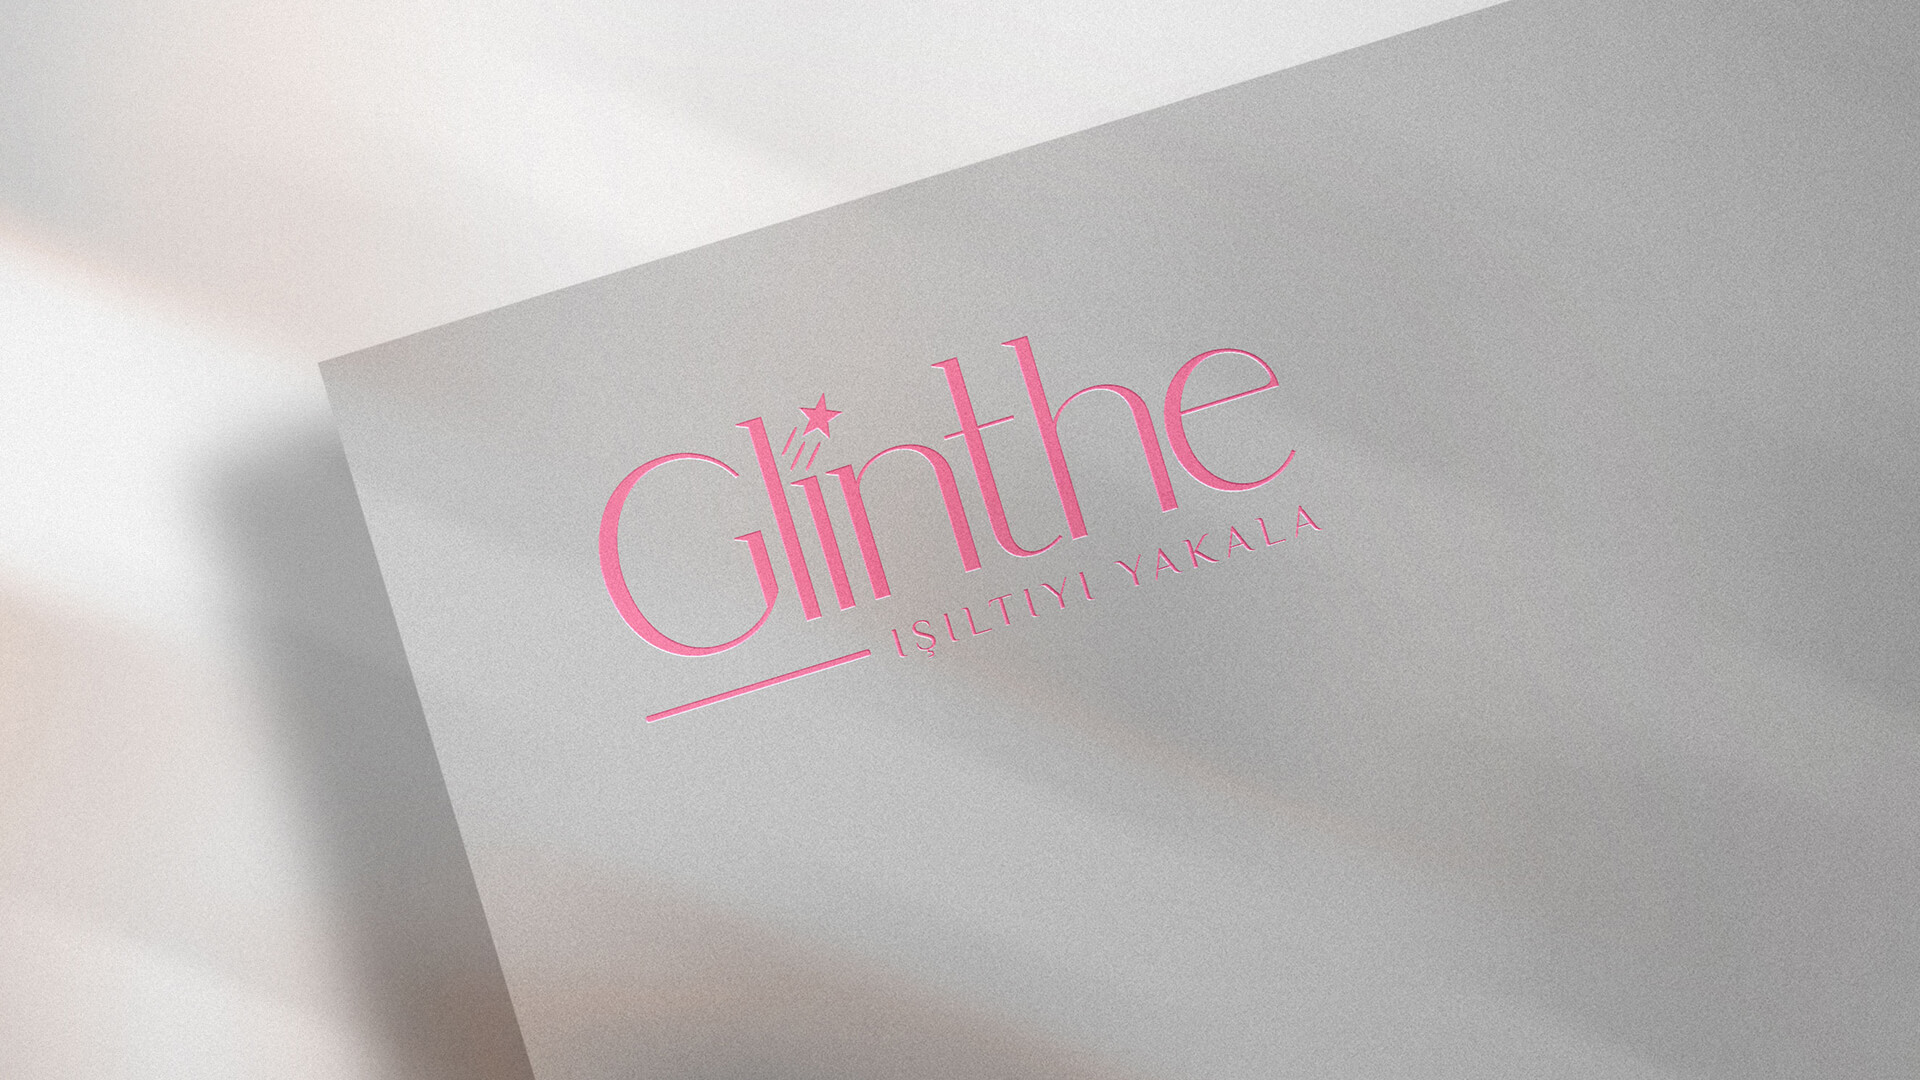 Glinthe Logo Tasarımı